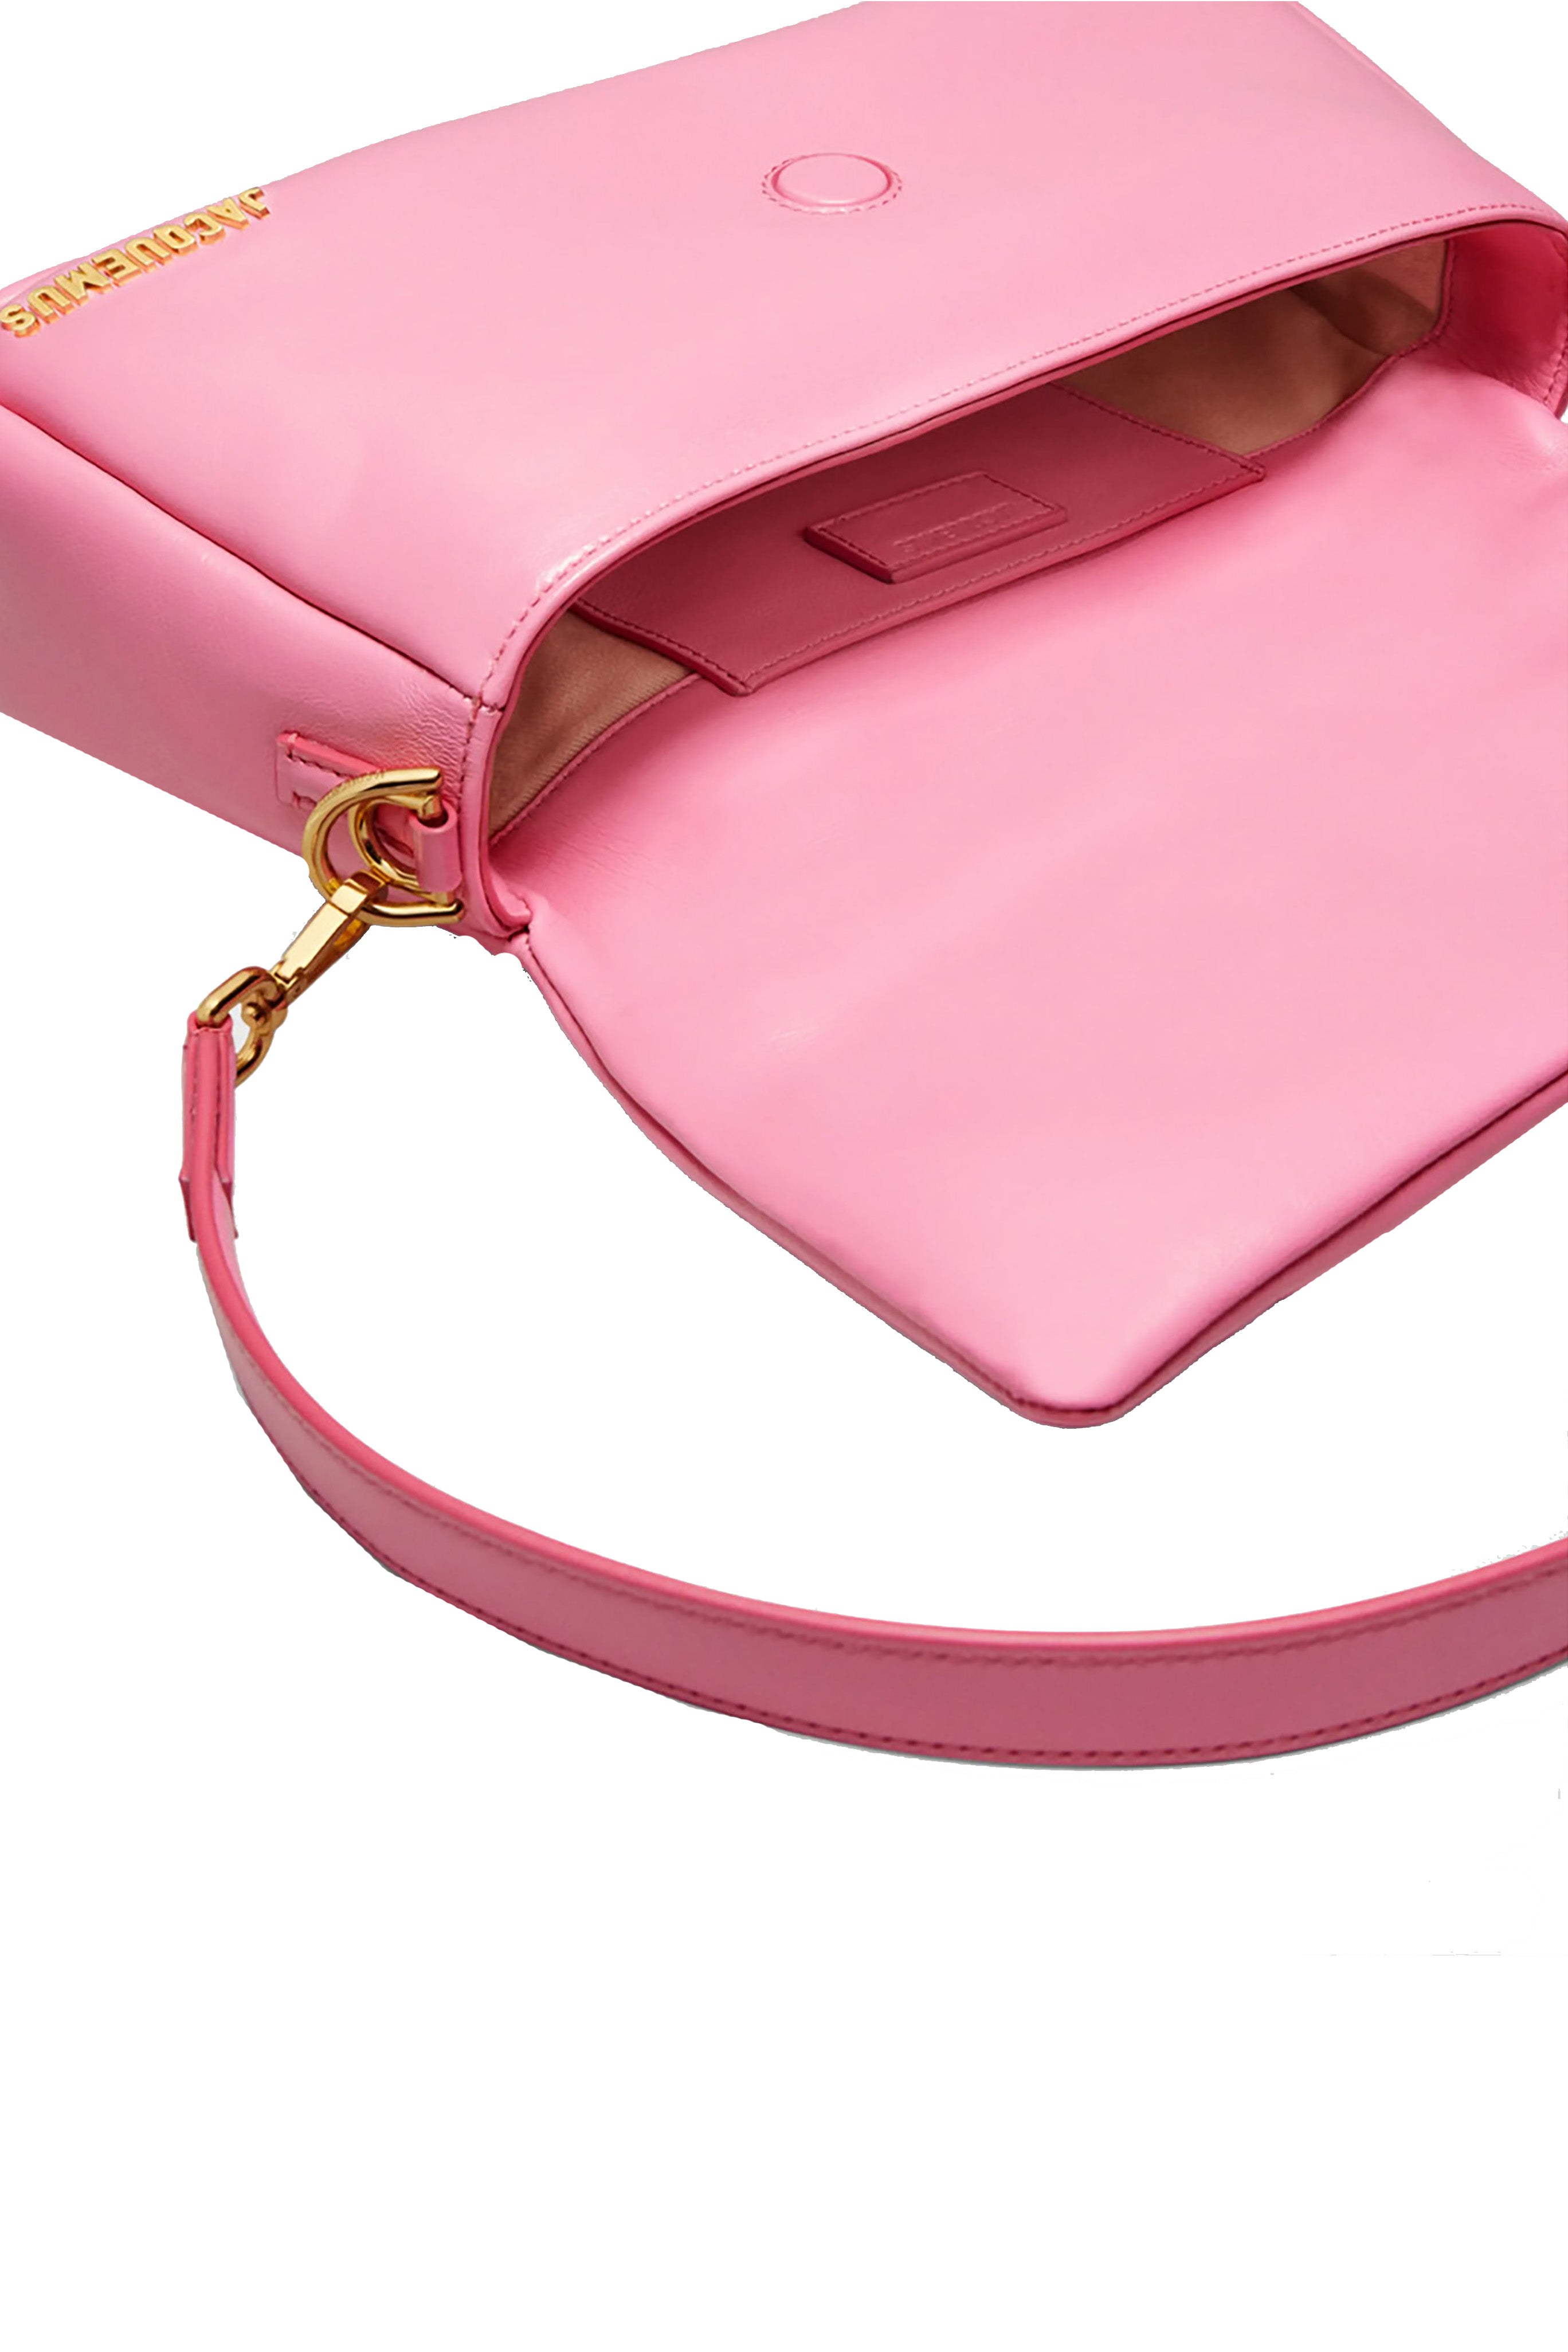 Le Bambimou Pink Handbag